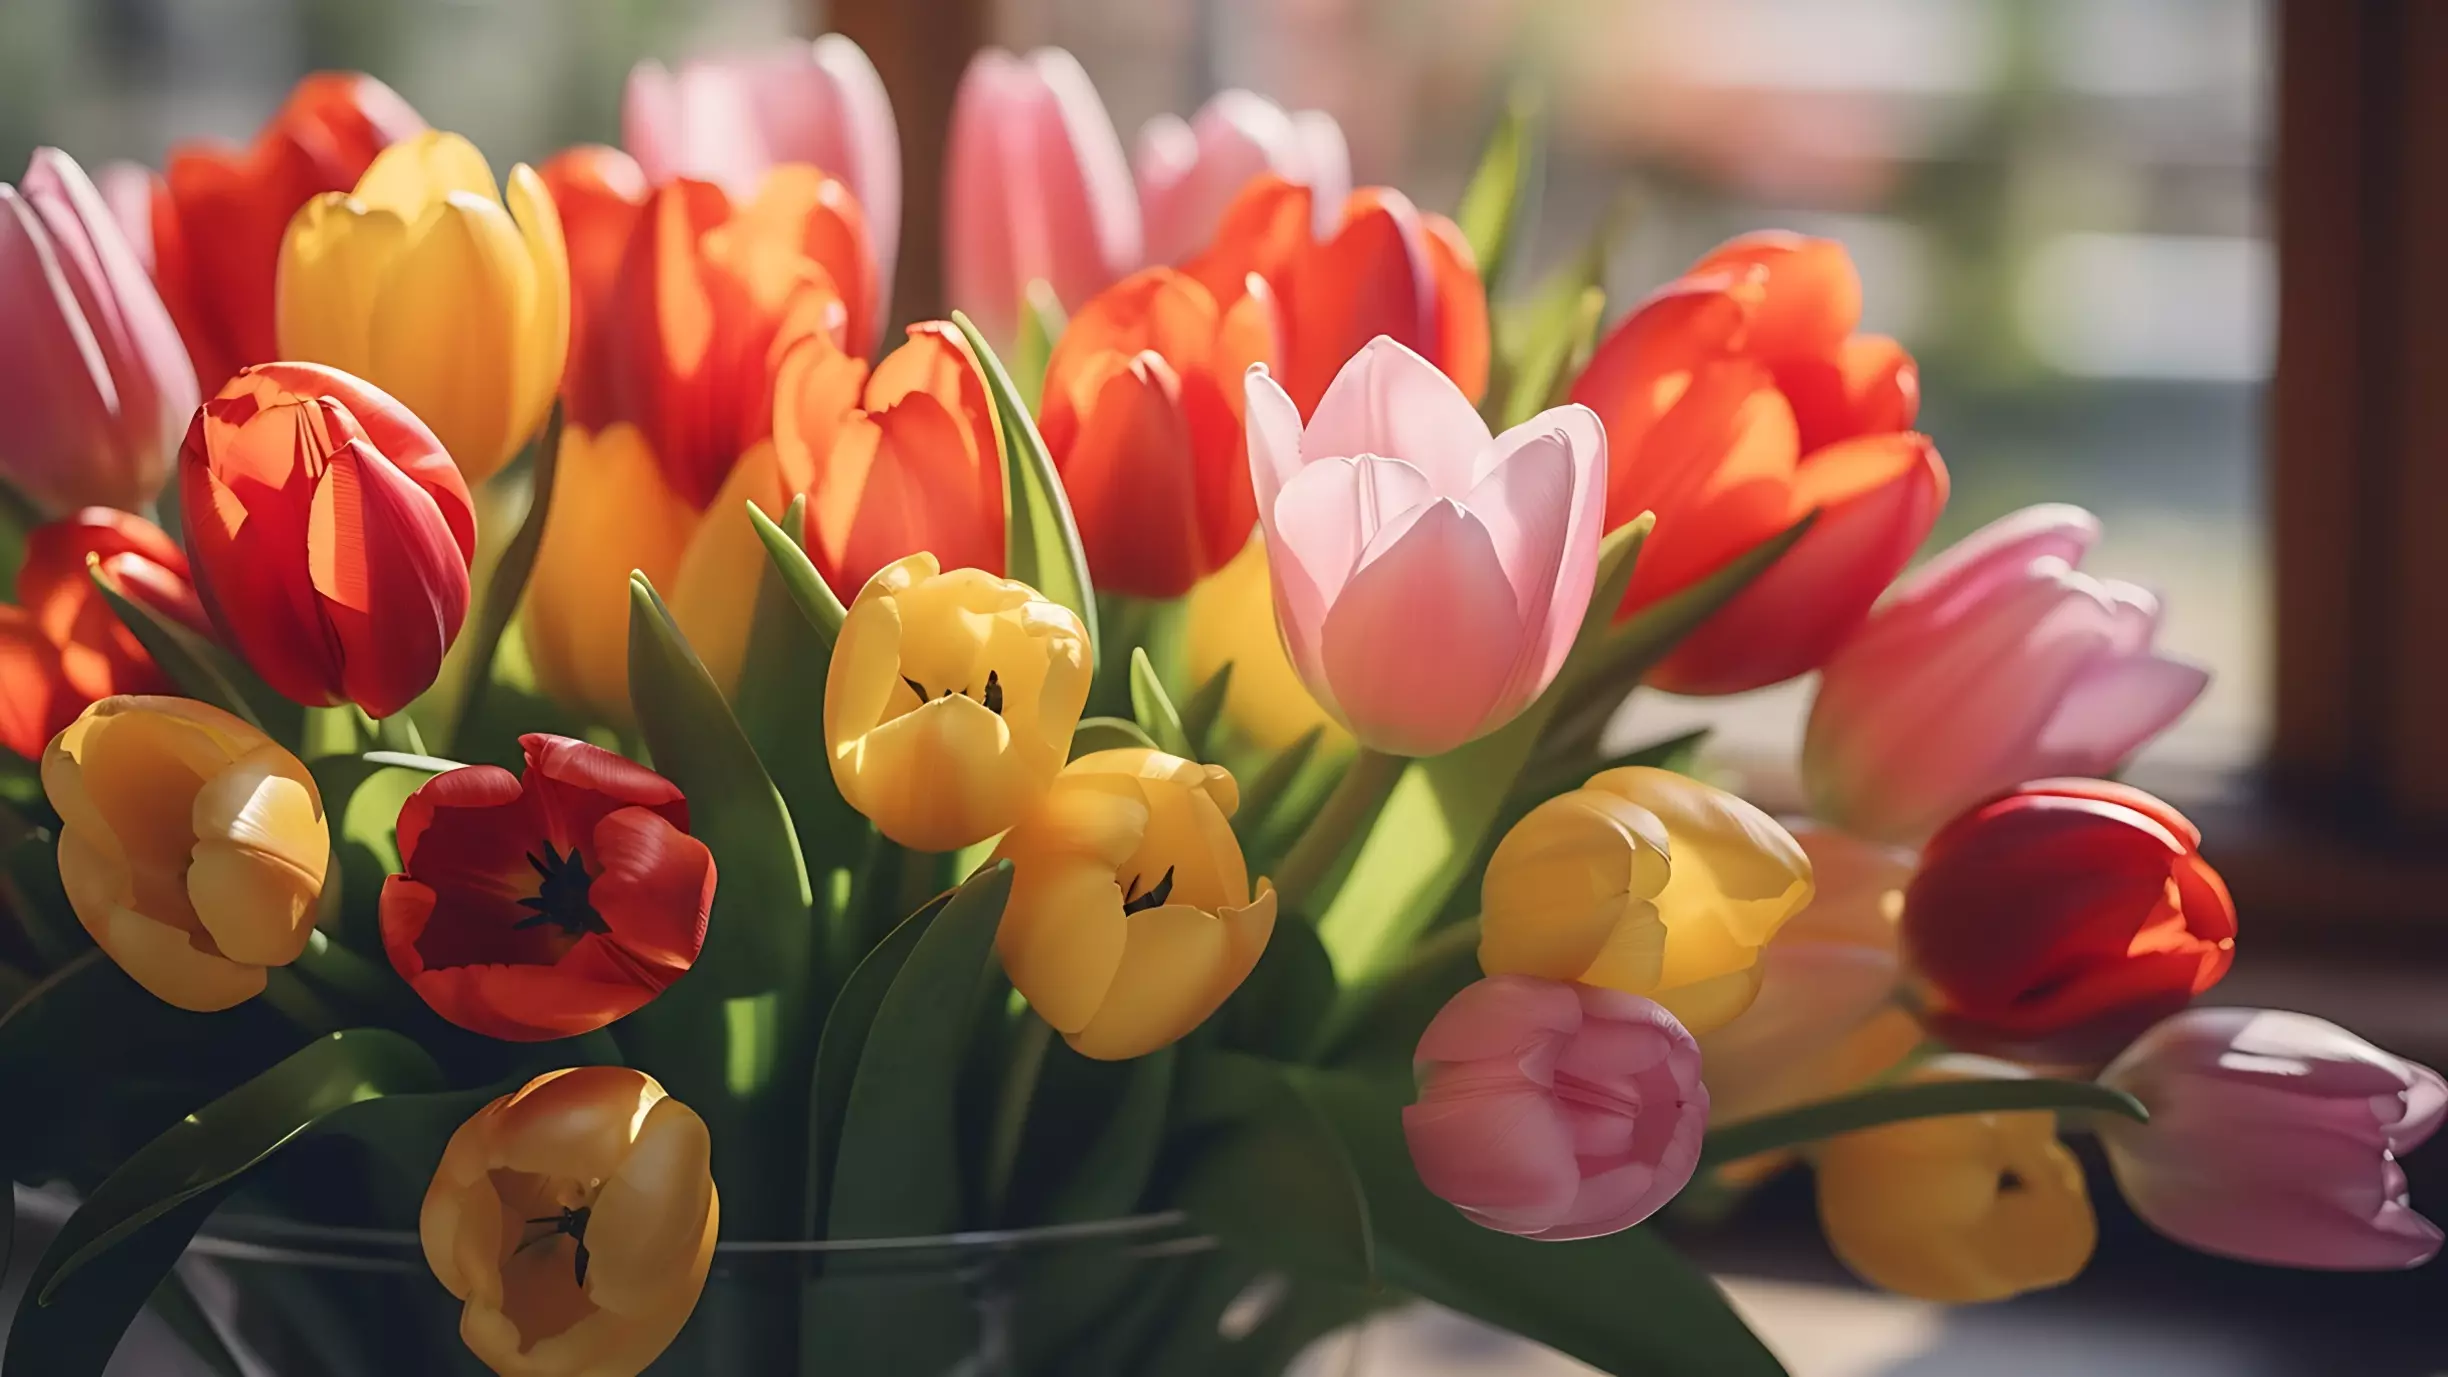 Букеты из цветов и конфет стали наиболее популярными подарками к 14 февраля